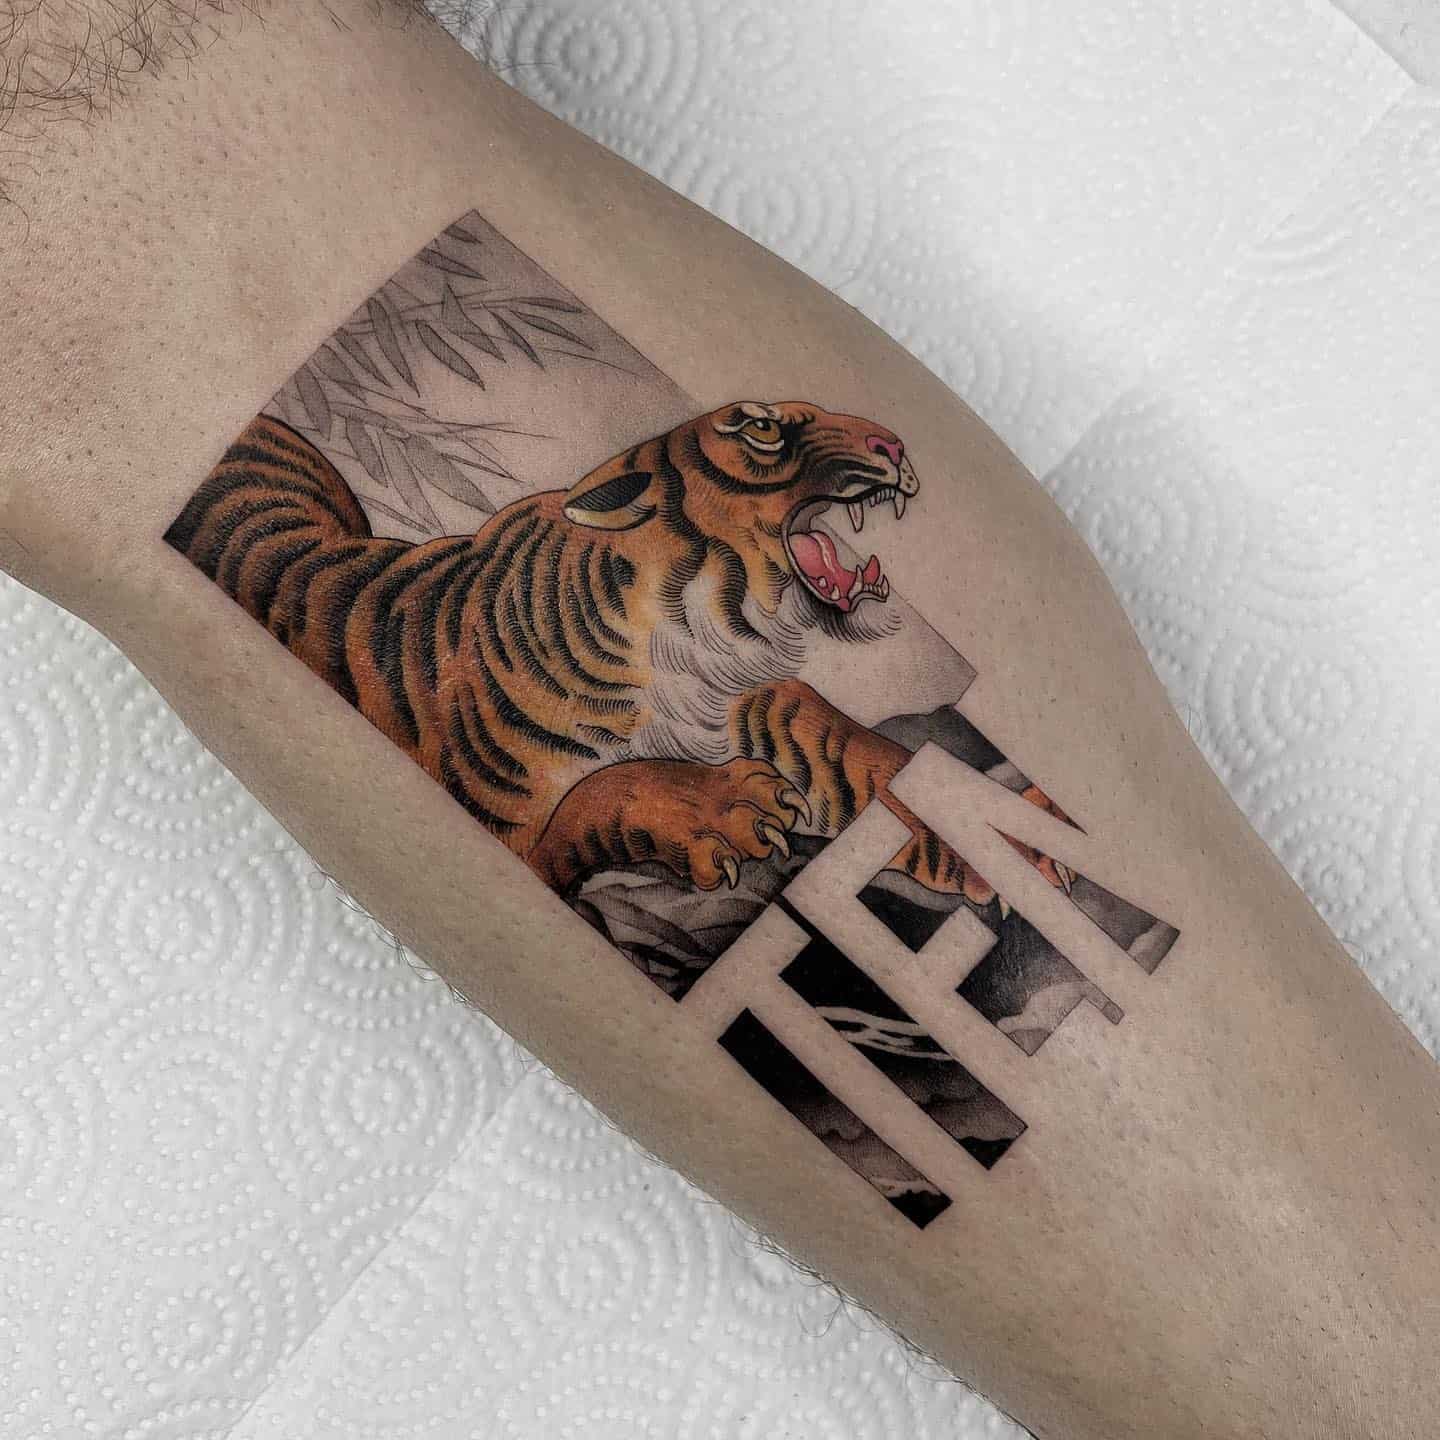 Tiger tattoo by inktotalart